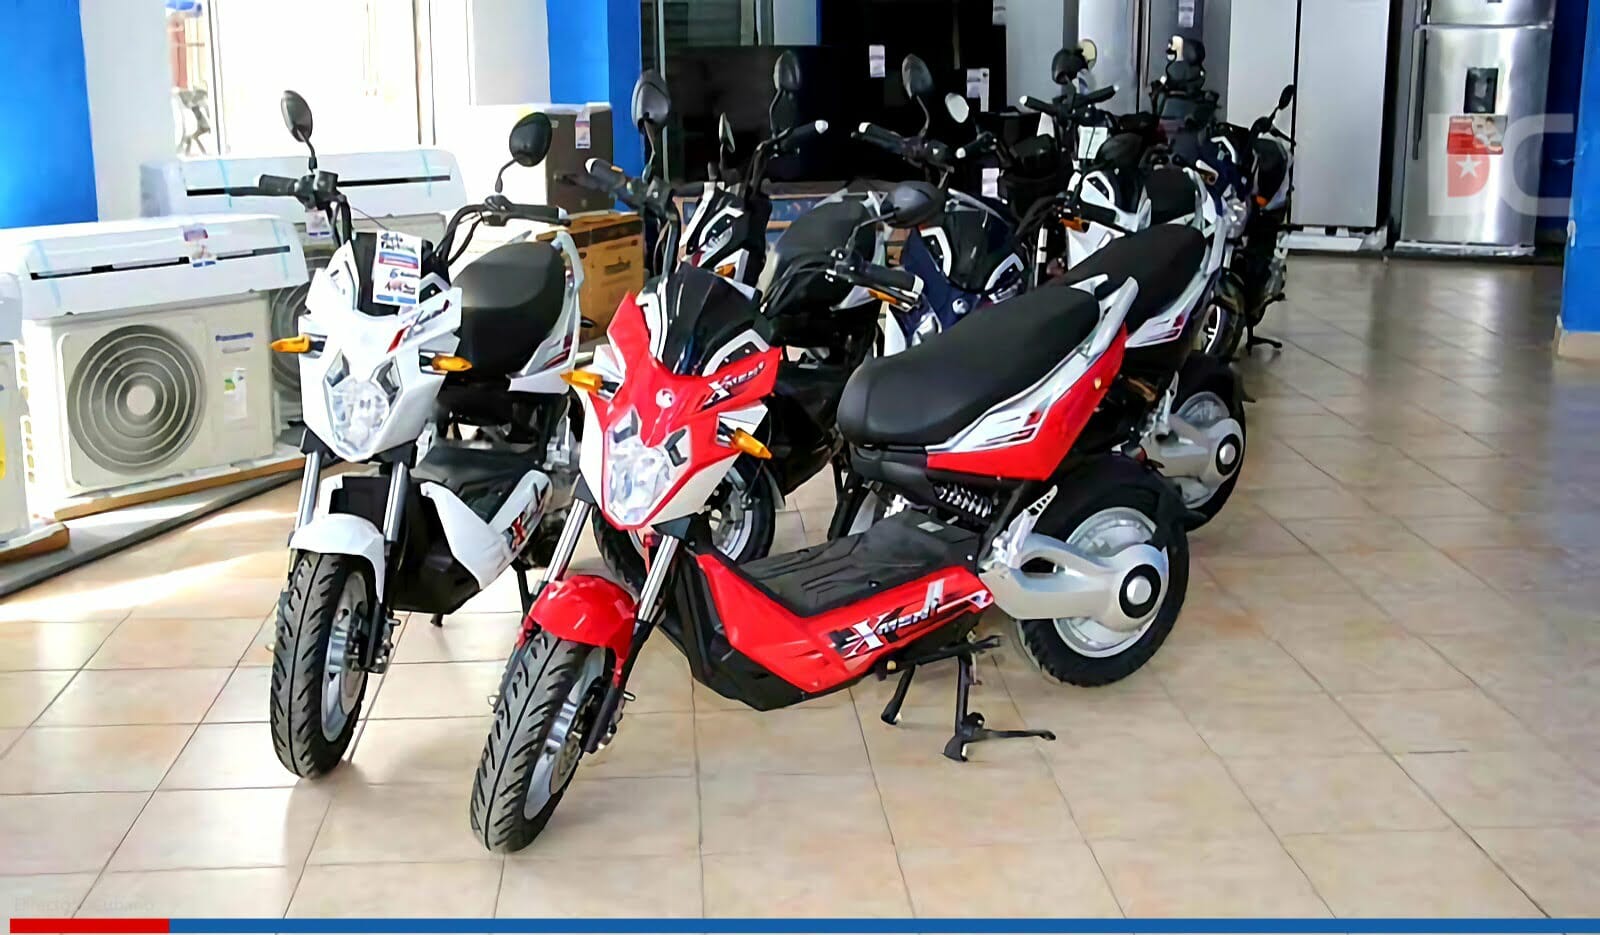 Motos eléctricas vietnamitas listas para la venta en